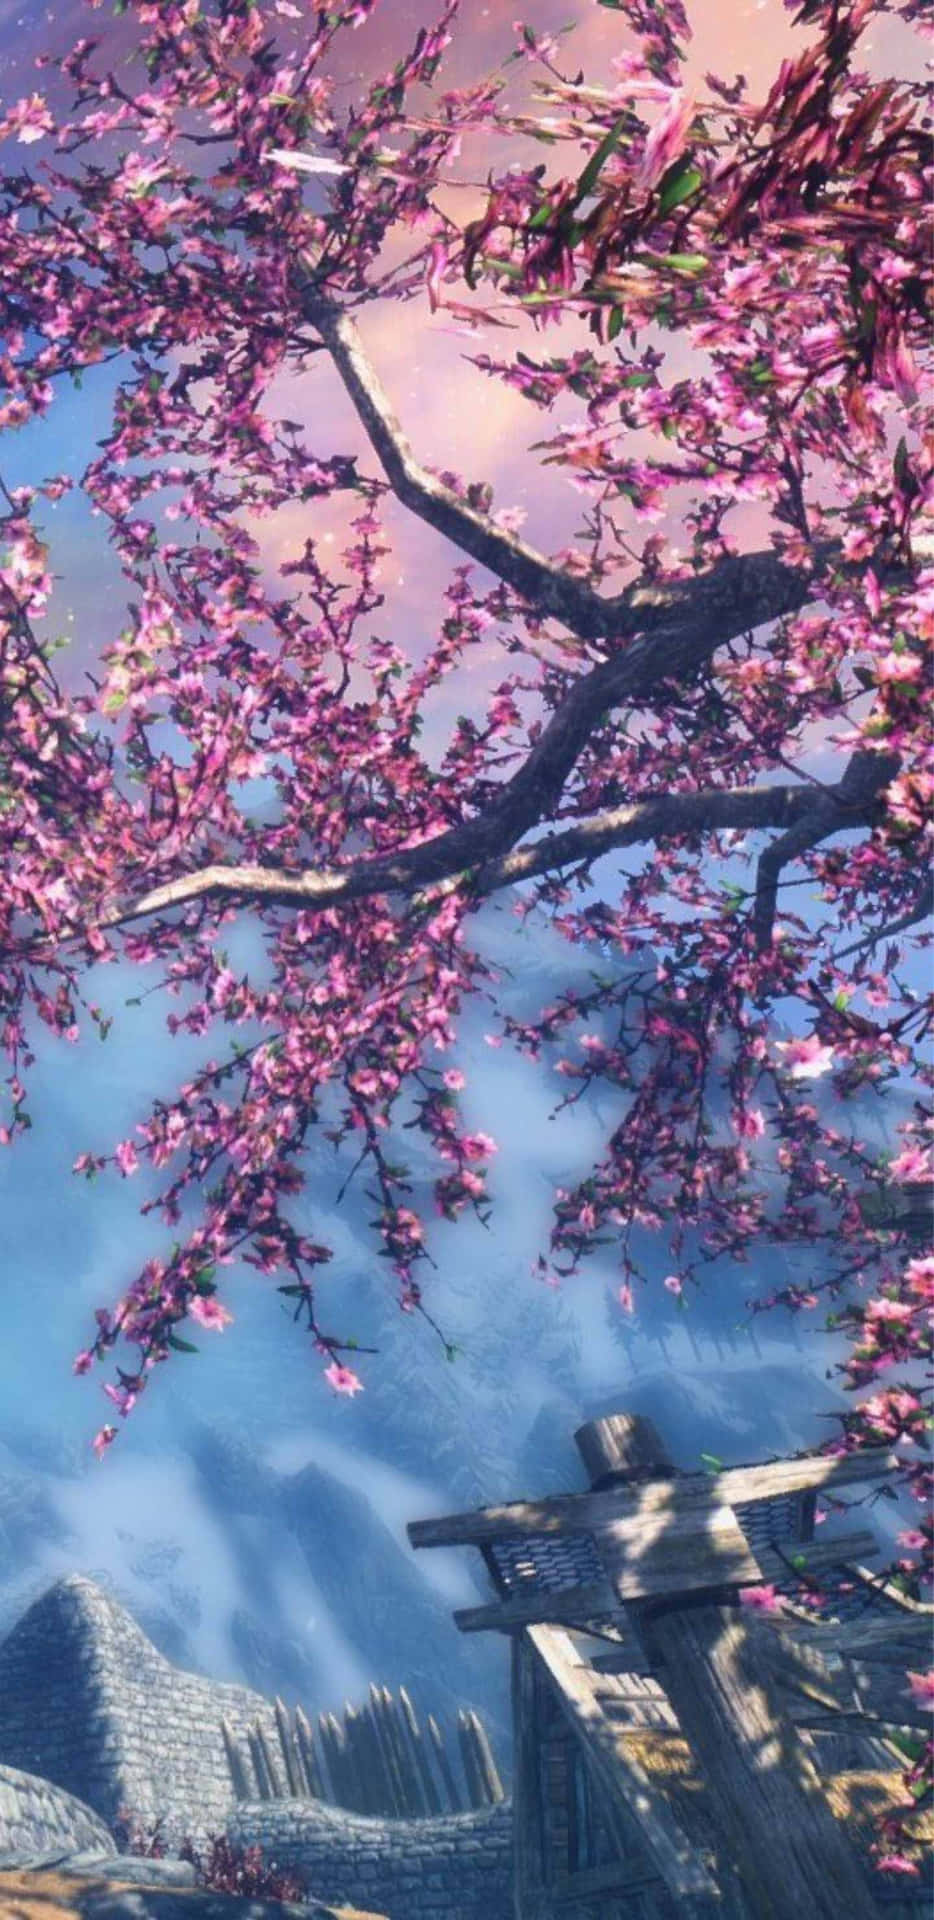 Pixel3xl Bakgrundsbild Med Sakura-träd Och The Talos Principle.